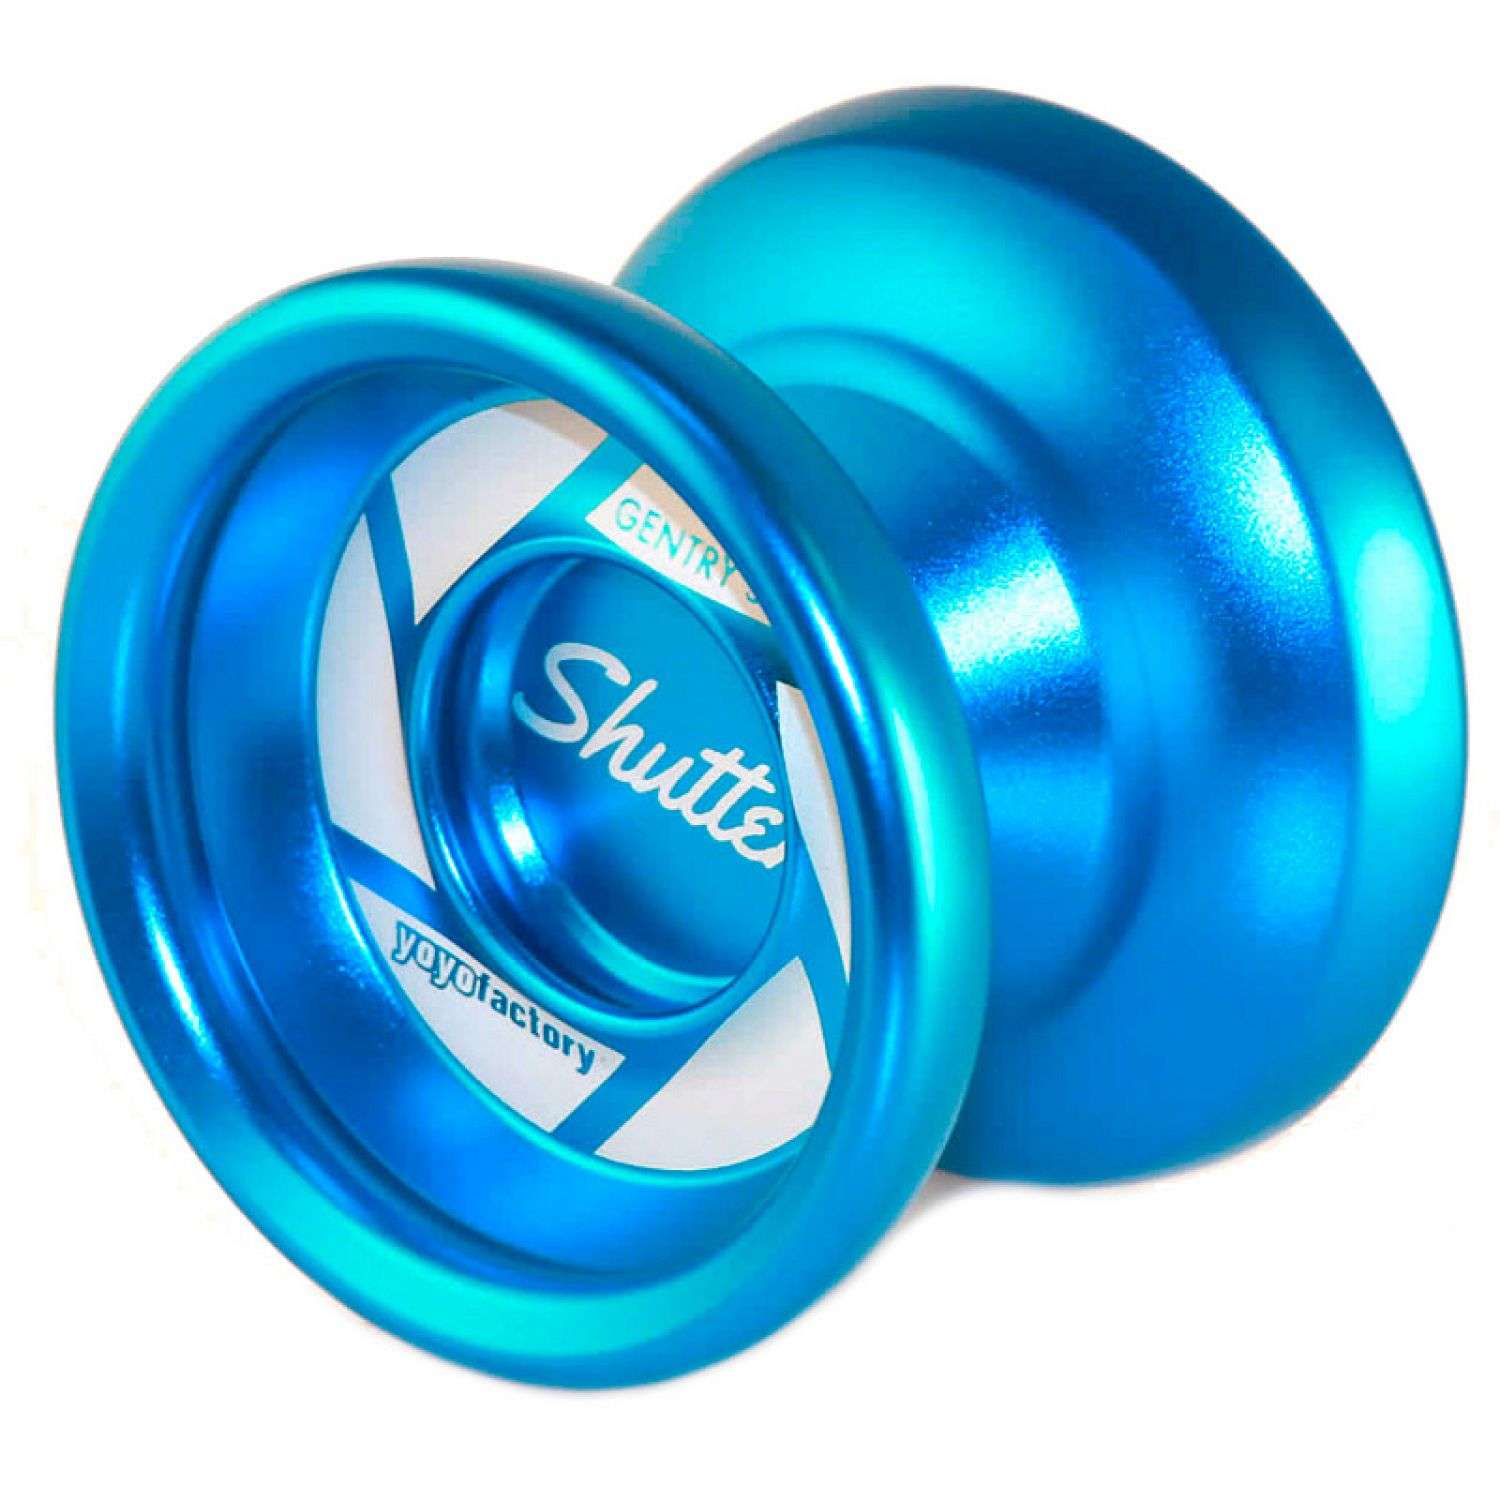 Развивающая игрушка YoYoFactory Йо-йо Shutter голубой - фото 1